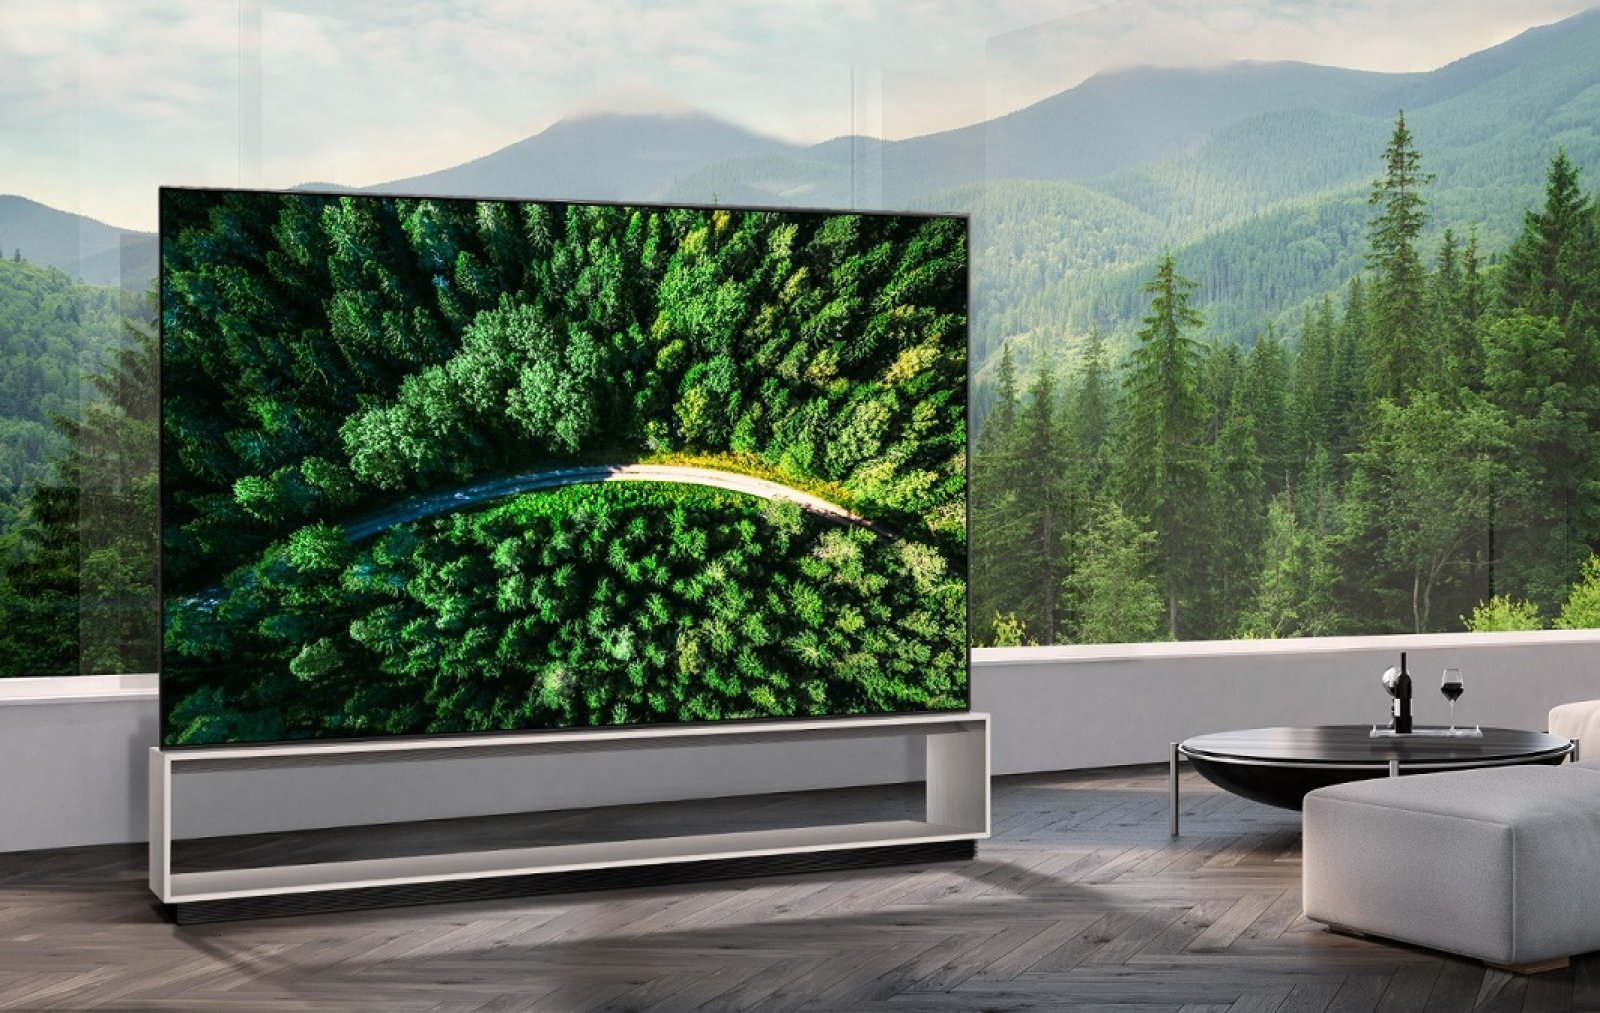 TV QLED 8K của Samsung là một trong những TV đầu tiên được Hiệp hội 8K chứng nhận